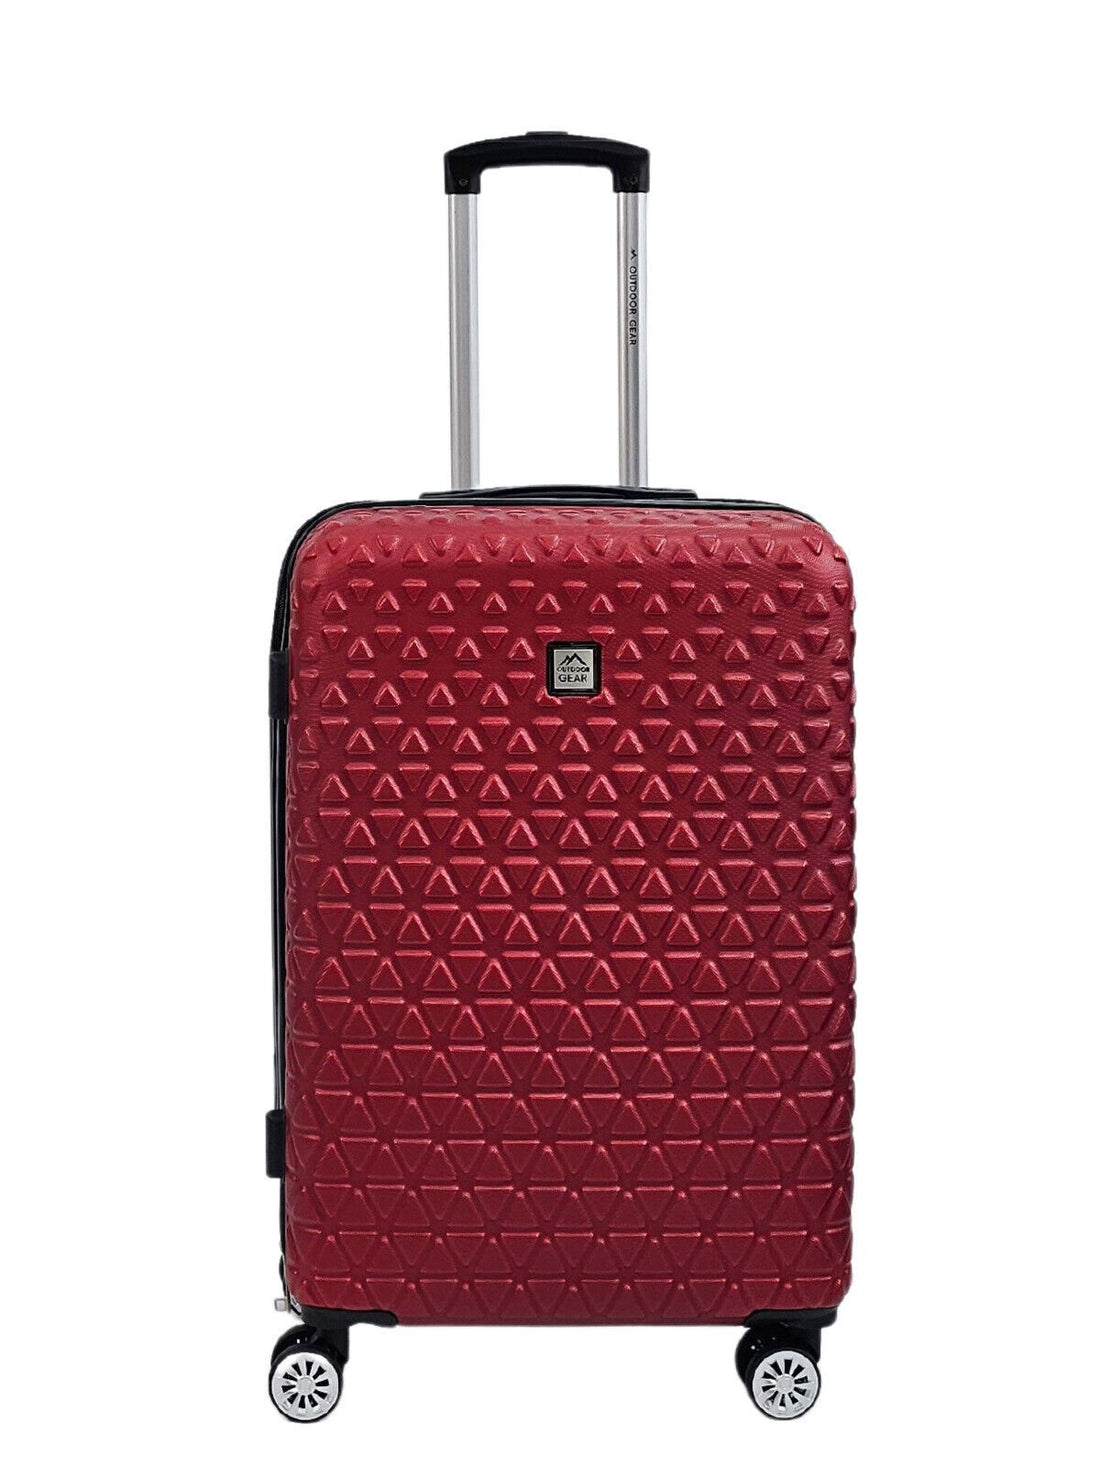 Hardshell Burgundy Suitcase Robust 8 Wheel Luggage Cabin Bag